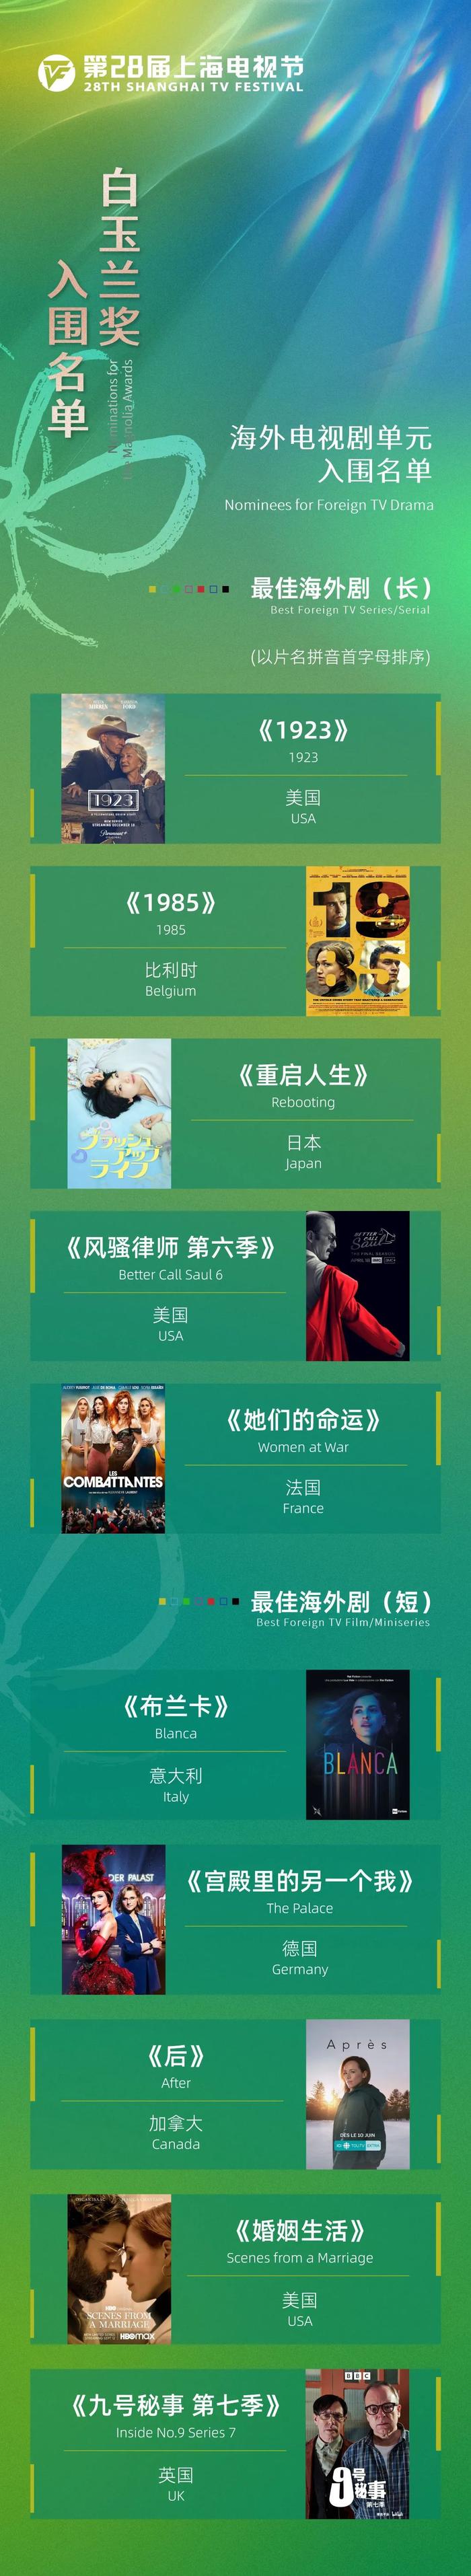 第28届上海电视节白玉兰奖入围名单公布！有没有你的心上“剧”？